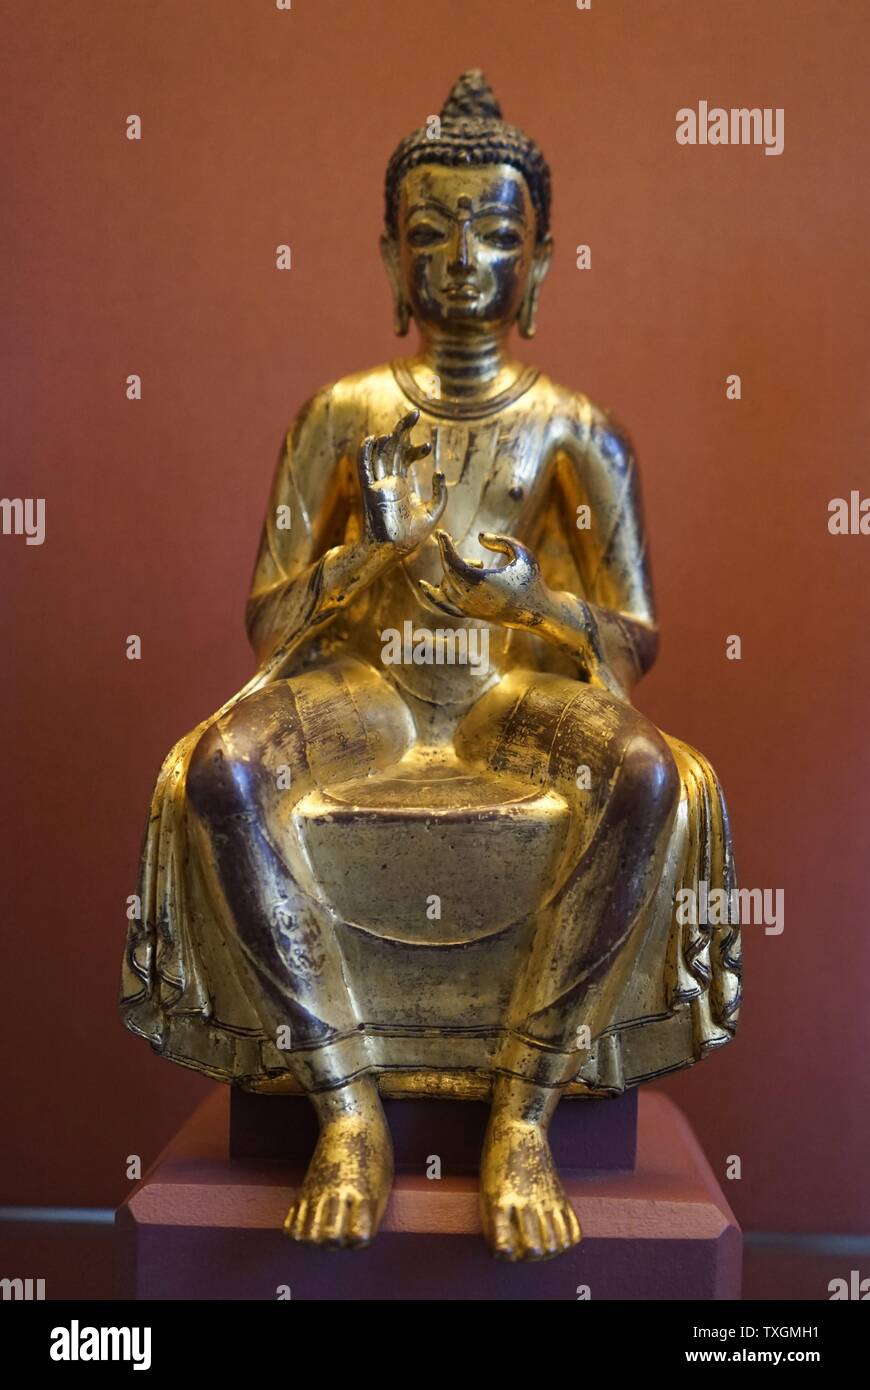 Sitzende Bodhisattva Maitreya. Maitreya erscheint auf der Erde in der Zukunft vollständige Erleuchtung erlangen, und der reinen Dharma Lehren. Vom 10. Jahrhundert Stockfoto